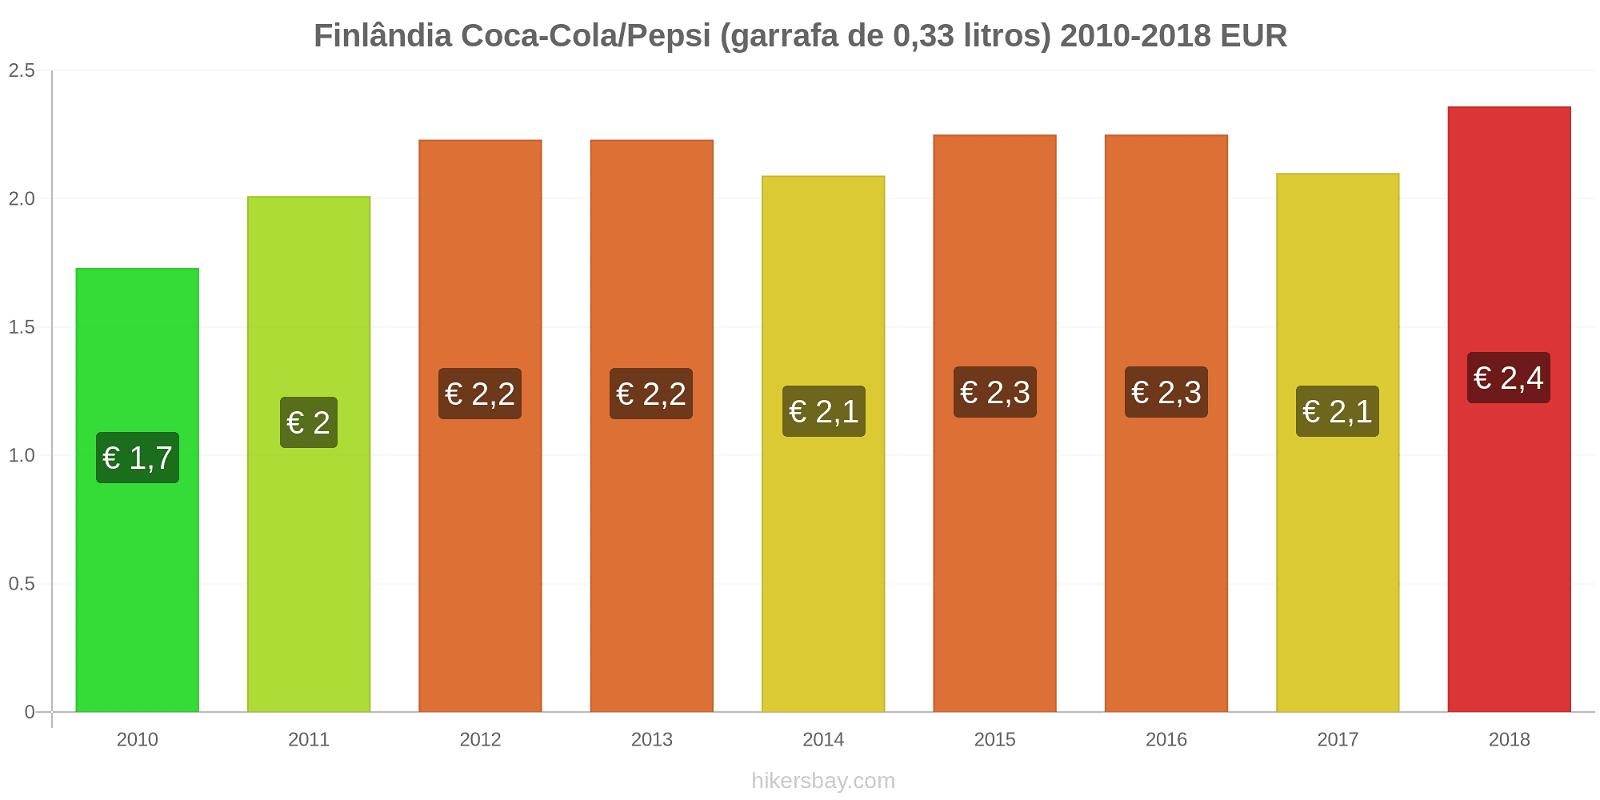 Finlândia mudanças de preços Coca-Cola/Pepsi (garrafa de 0.33 litros) hikersbay.com